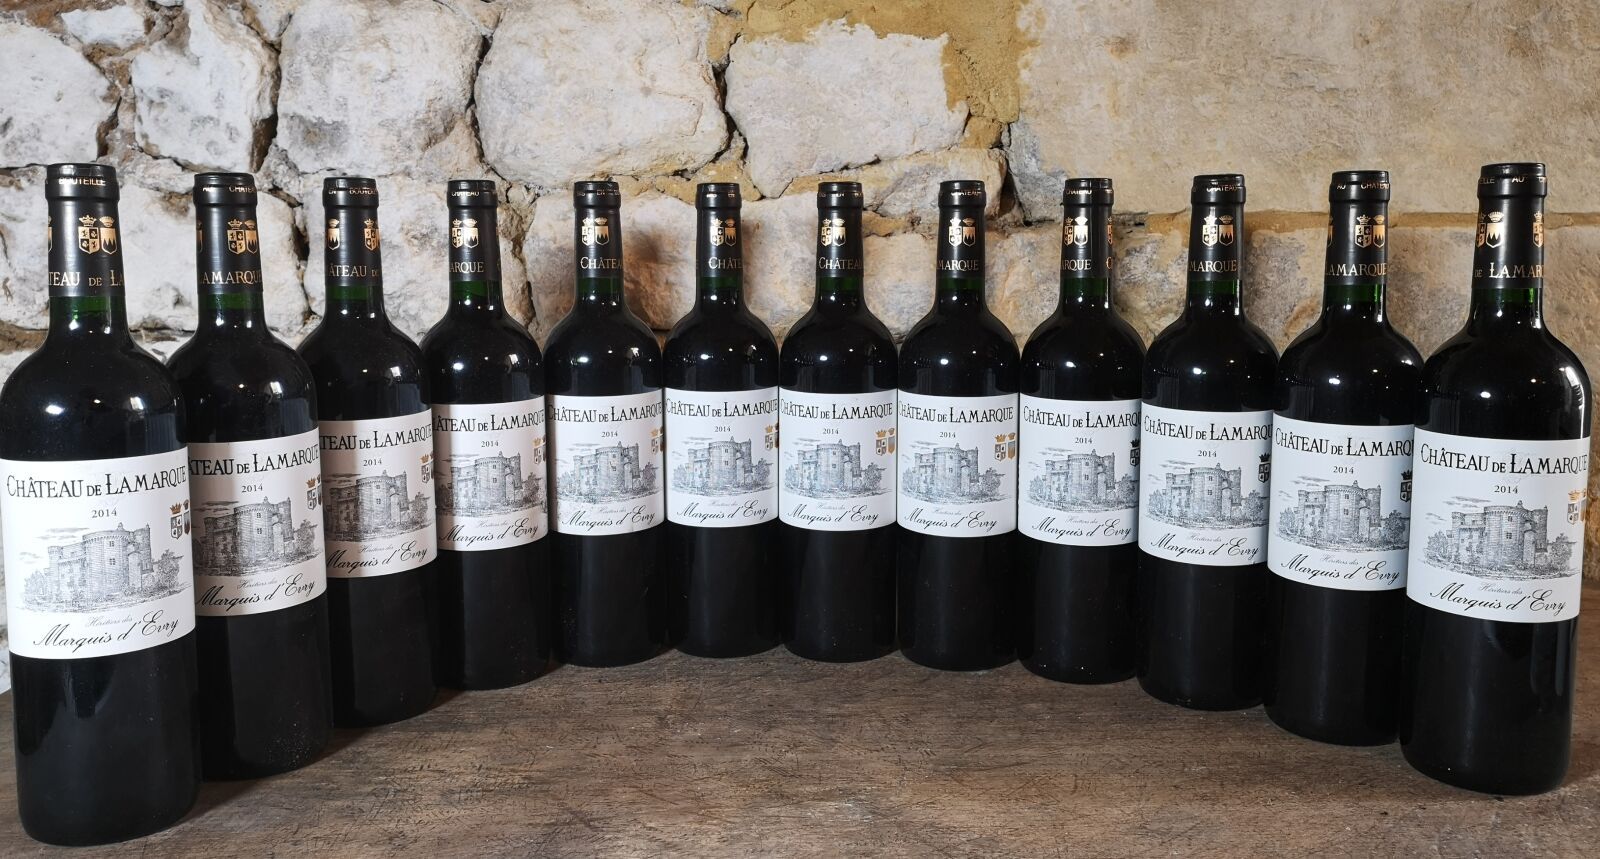 12 bouteilles Château de LAMARQUE - Haut Médoc 2014 | Drouot.com